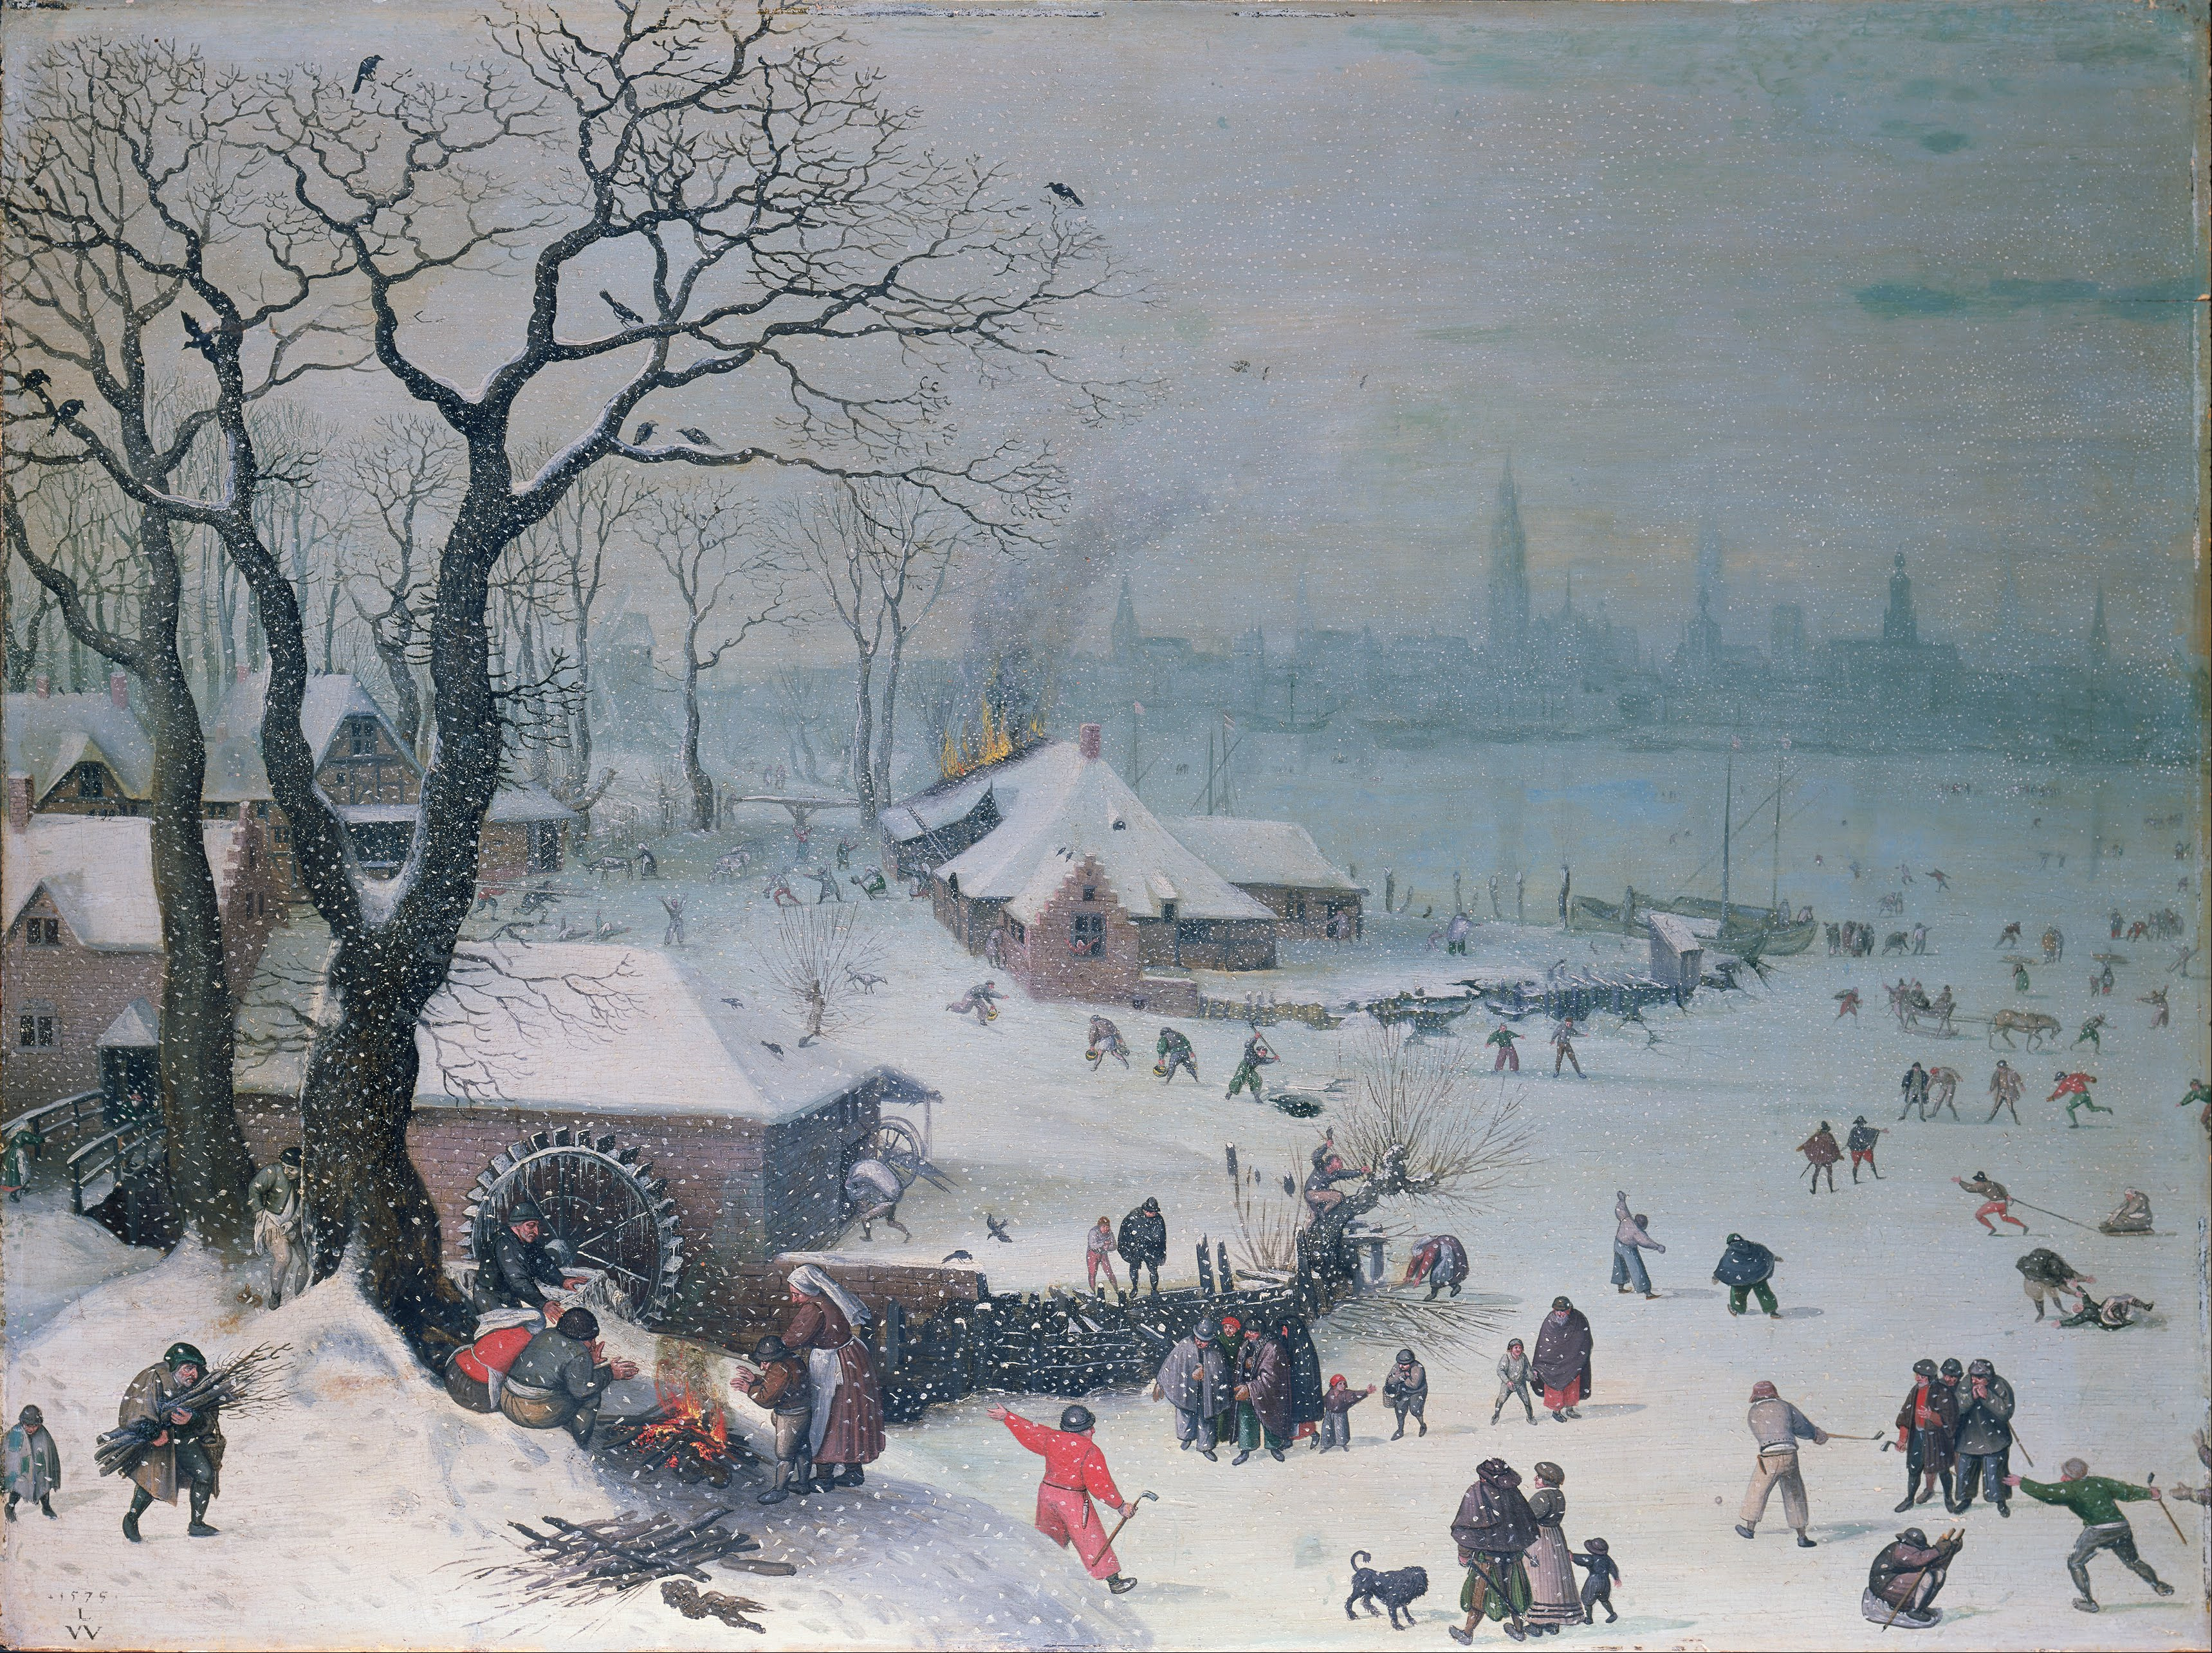 Zimowy krajobraz z padającym śniegiem niedaleko Antwerpii by Lucas van Valckenborch - 1575 - 61 x 82 cm 